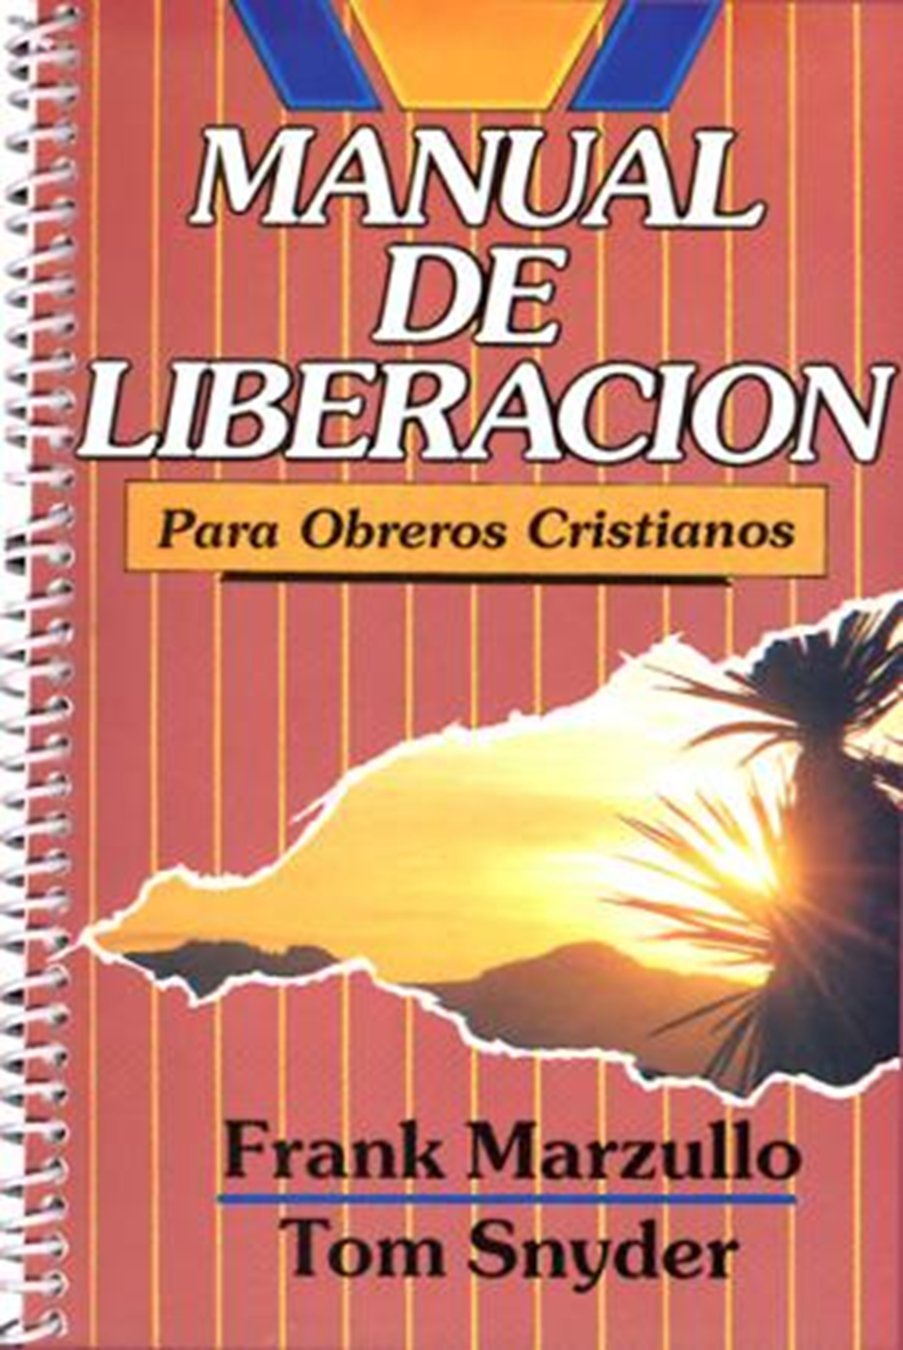 Manual de Liberación para Obreros Cristianos